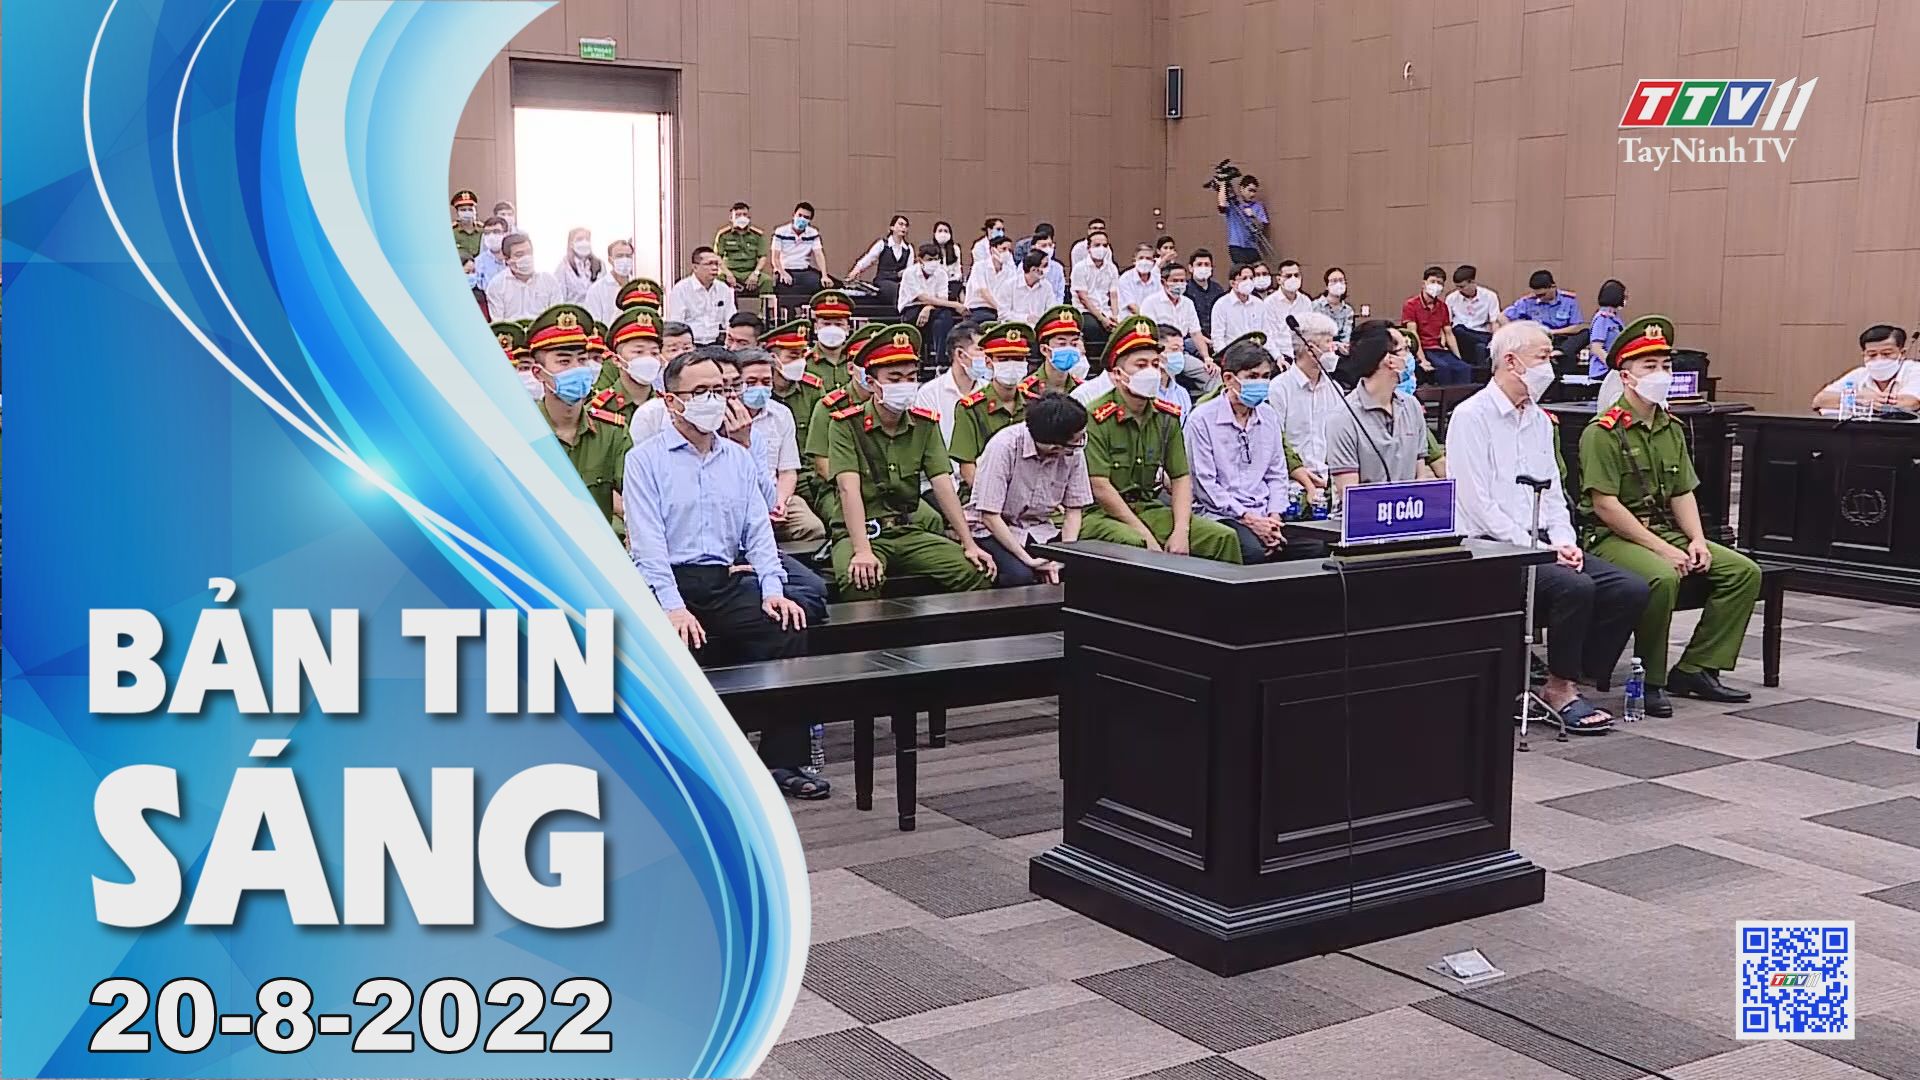 Bản tin sáng 20-8-2022 | Tin tức hôm nay | TayNinhTV